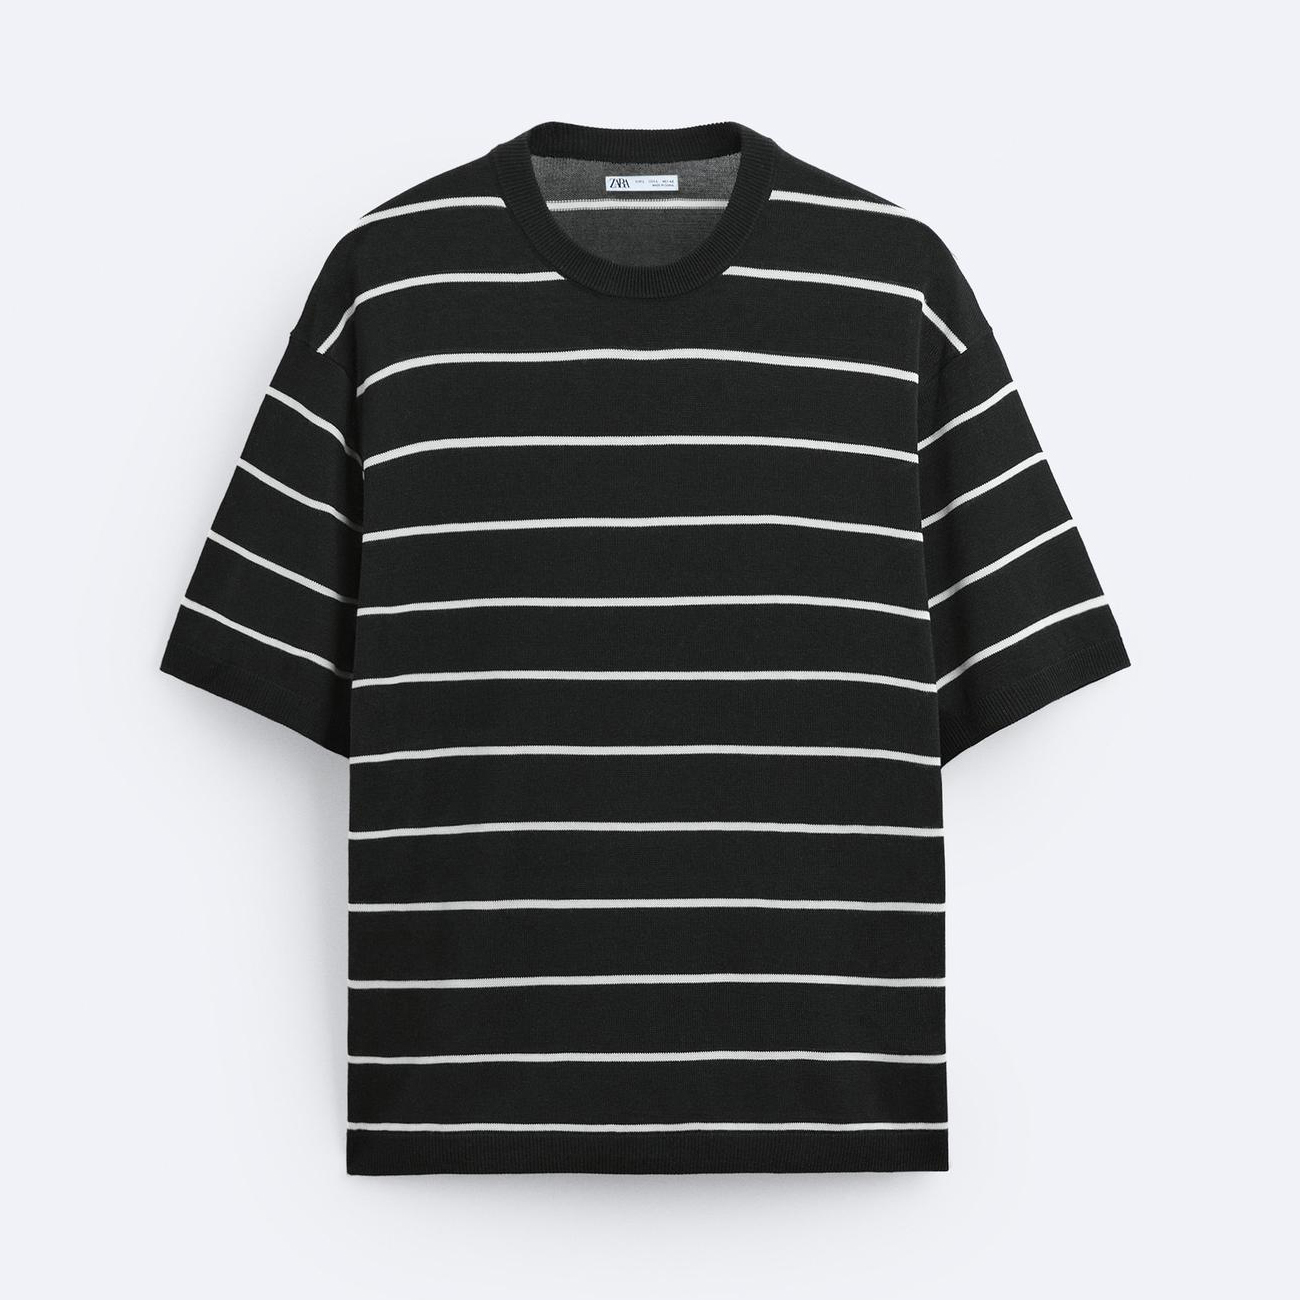 Футболка Zara Striped Textured Knit, черный/белый